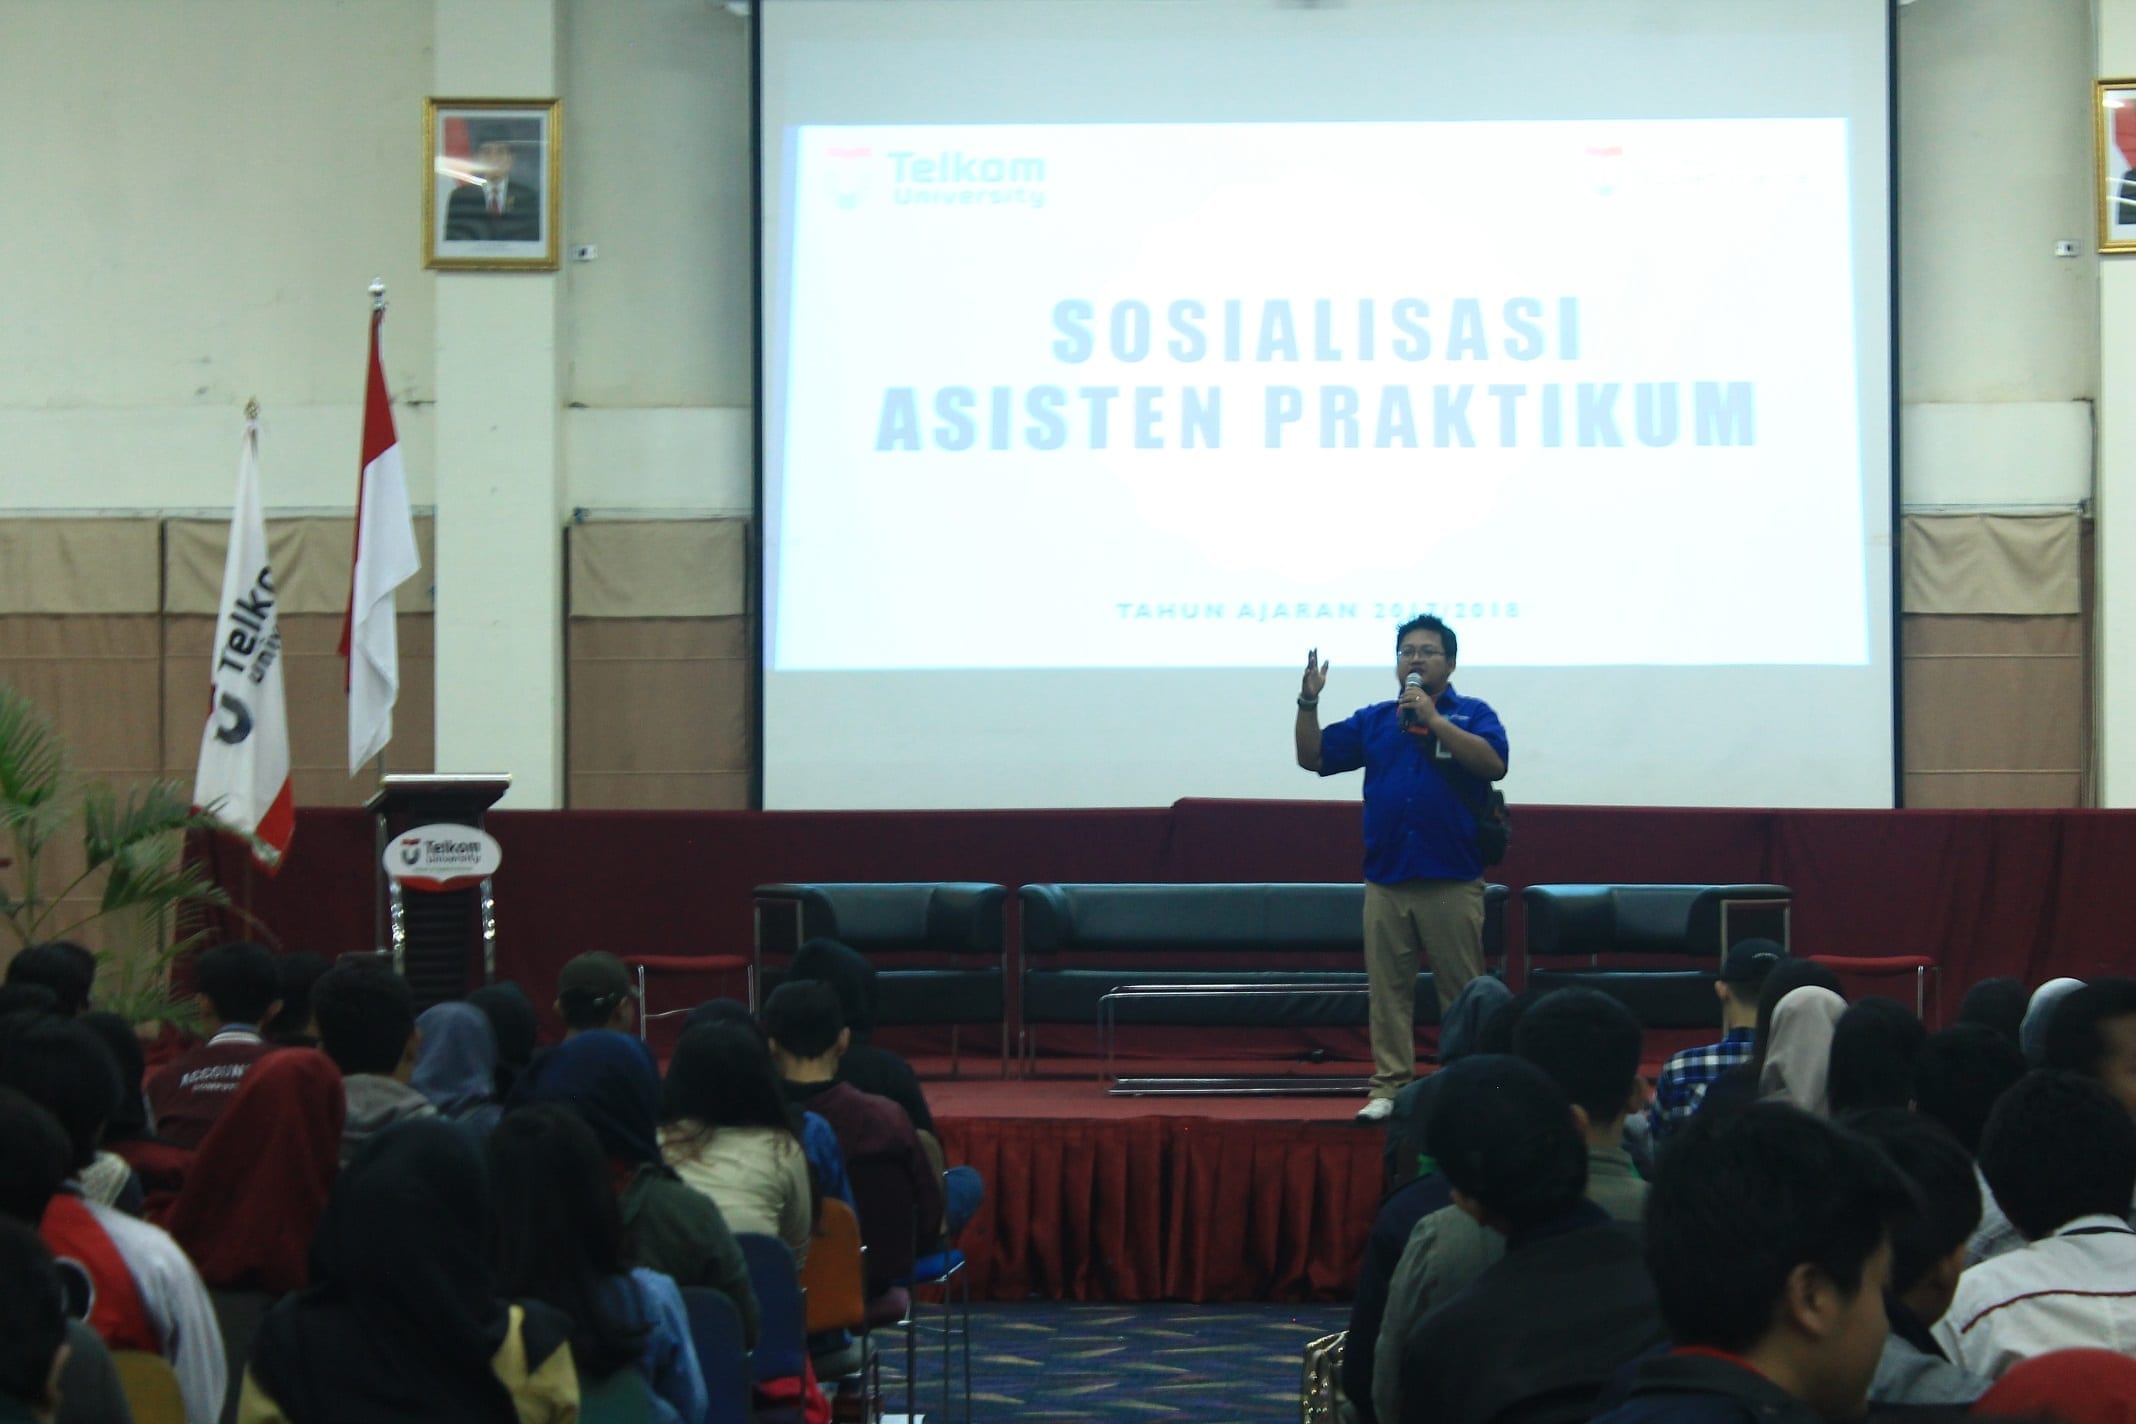 Kegiatan Sosialisasi Asisten Praktikum Semester Ganjil 2017/2018